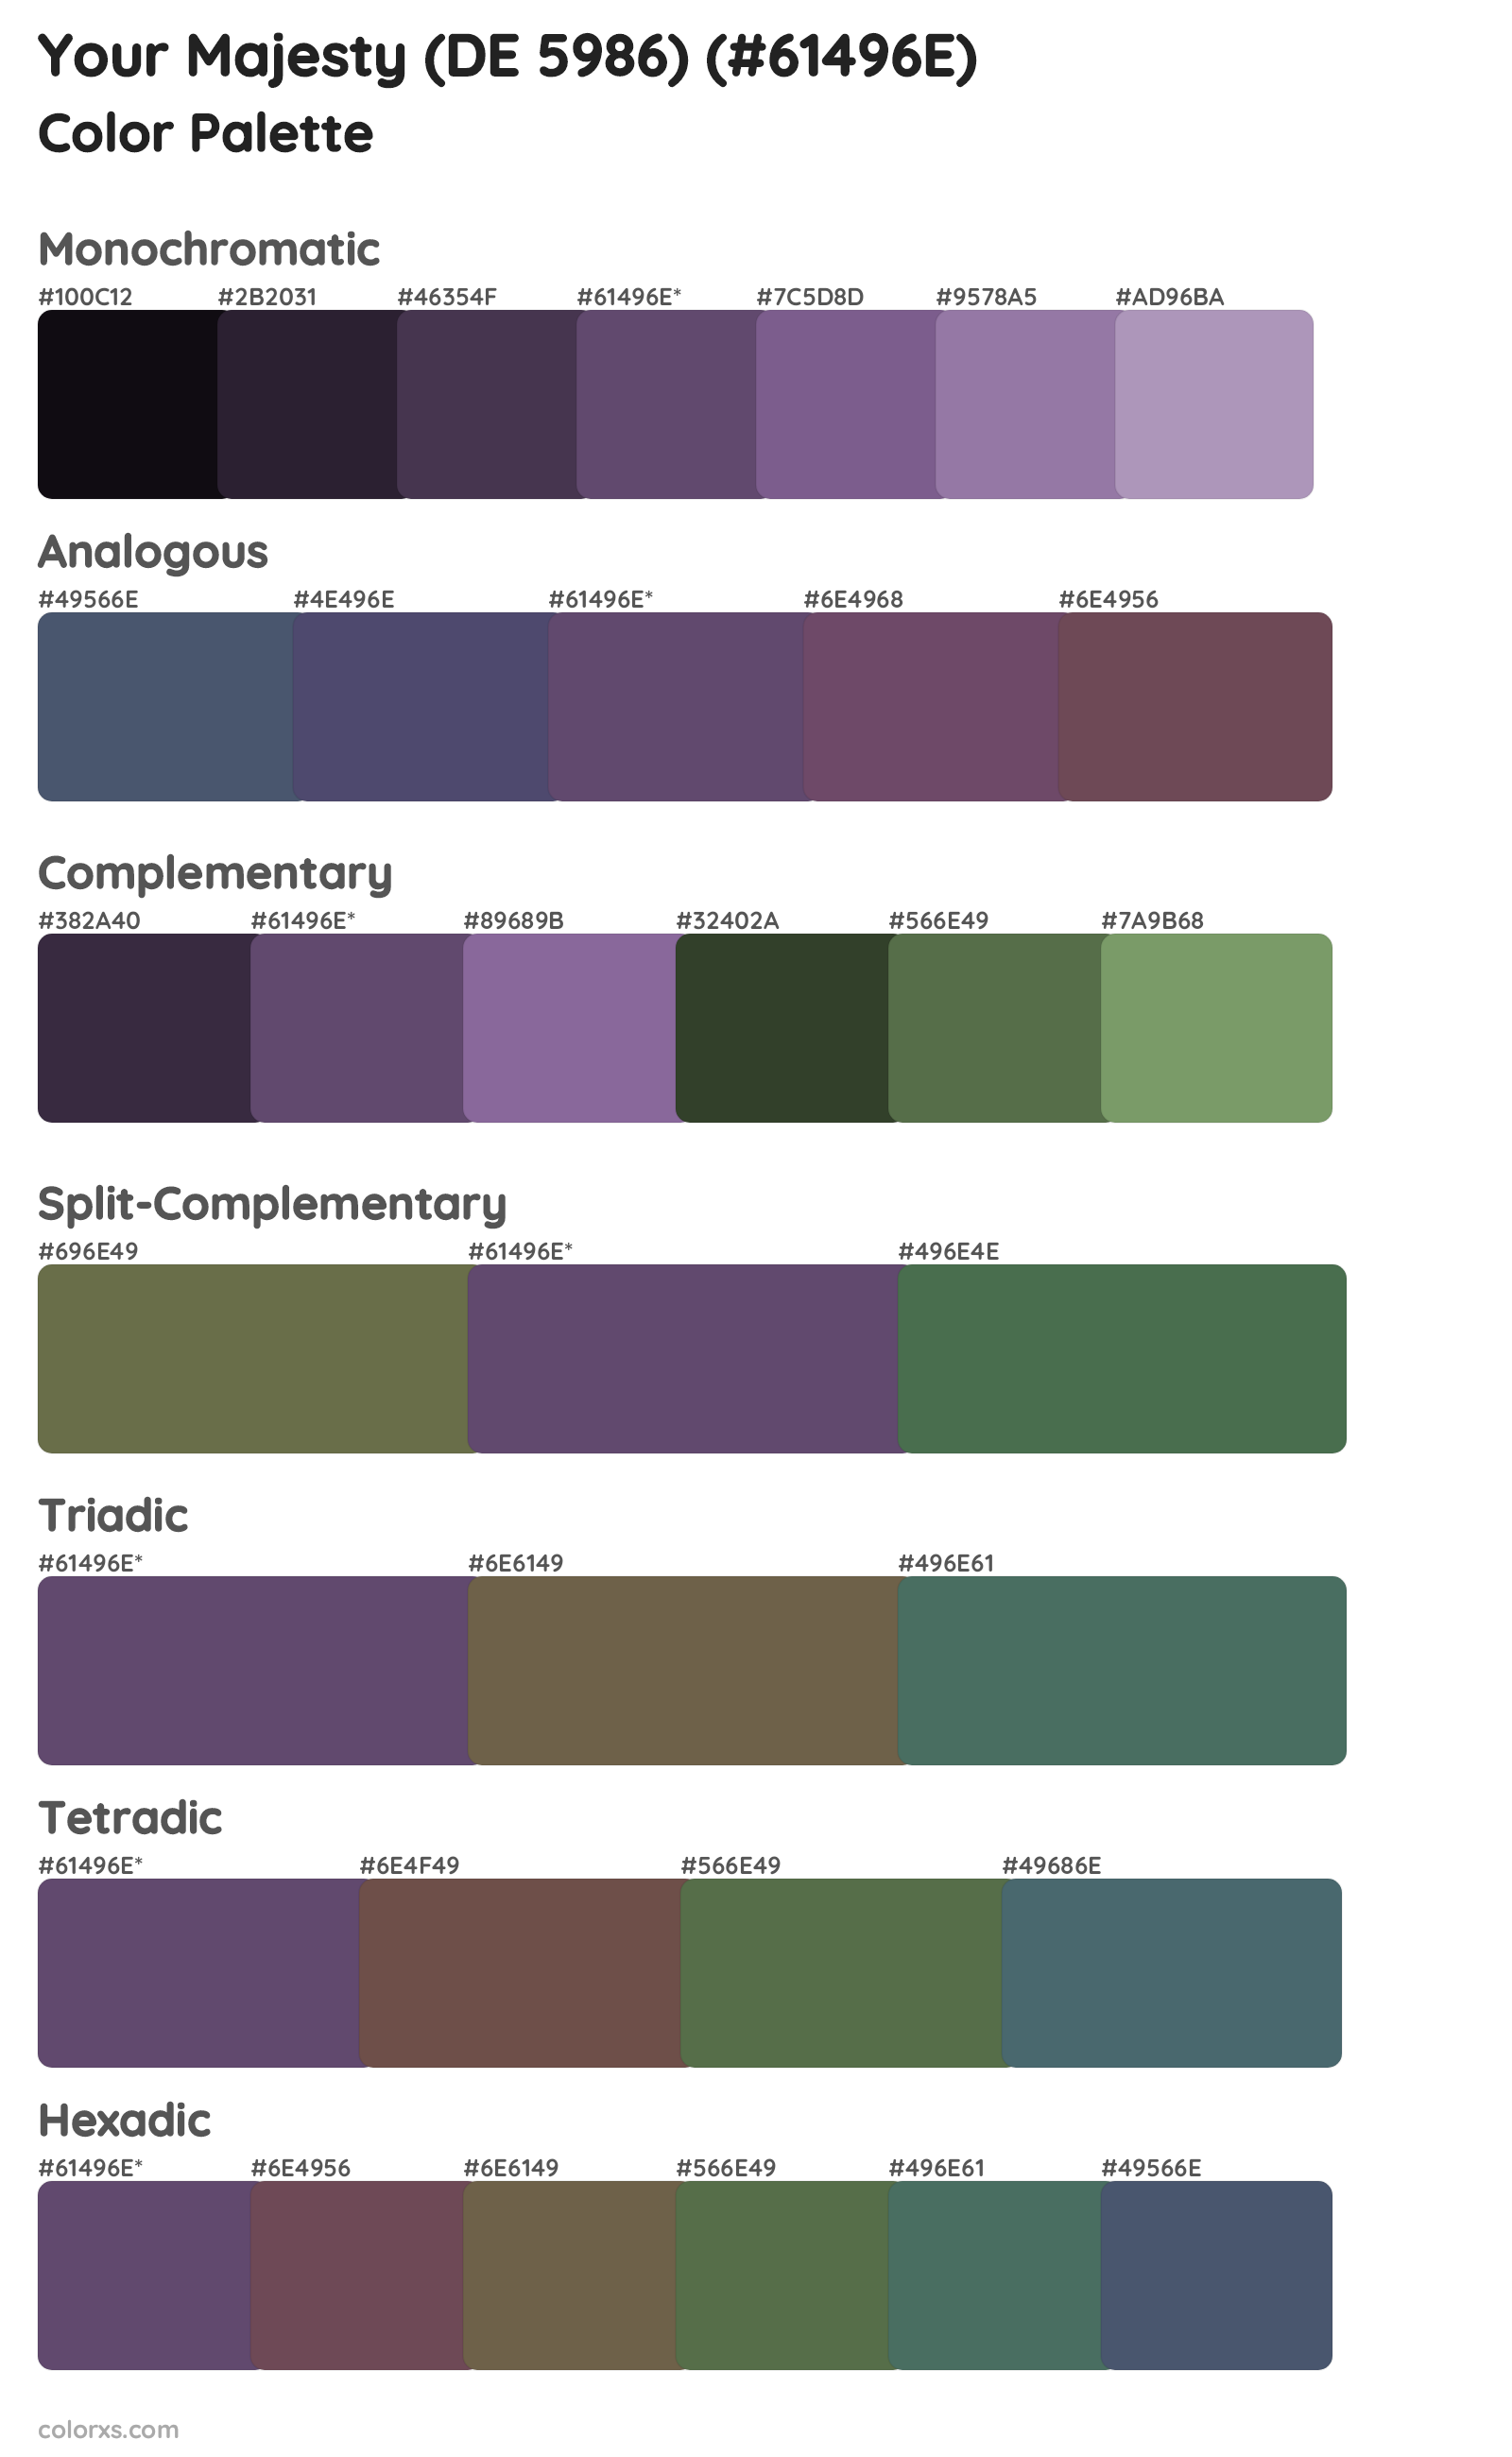 Your Majesty (DE 5986) Color Scheme Palettes